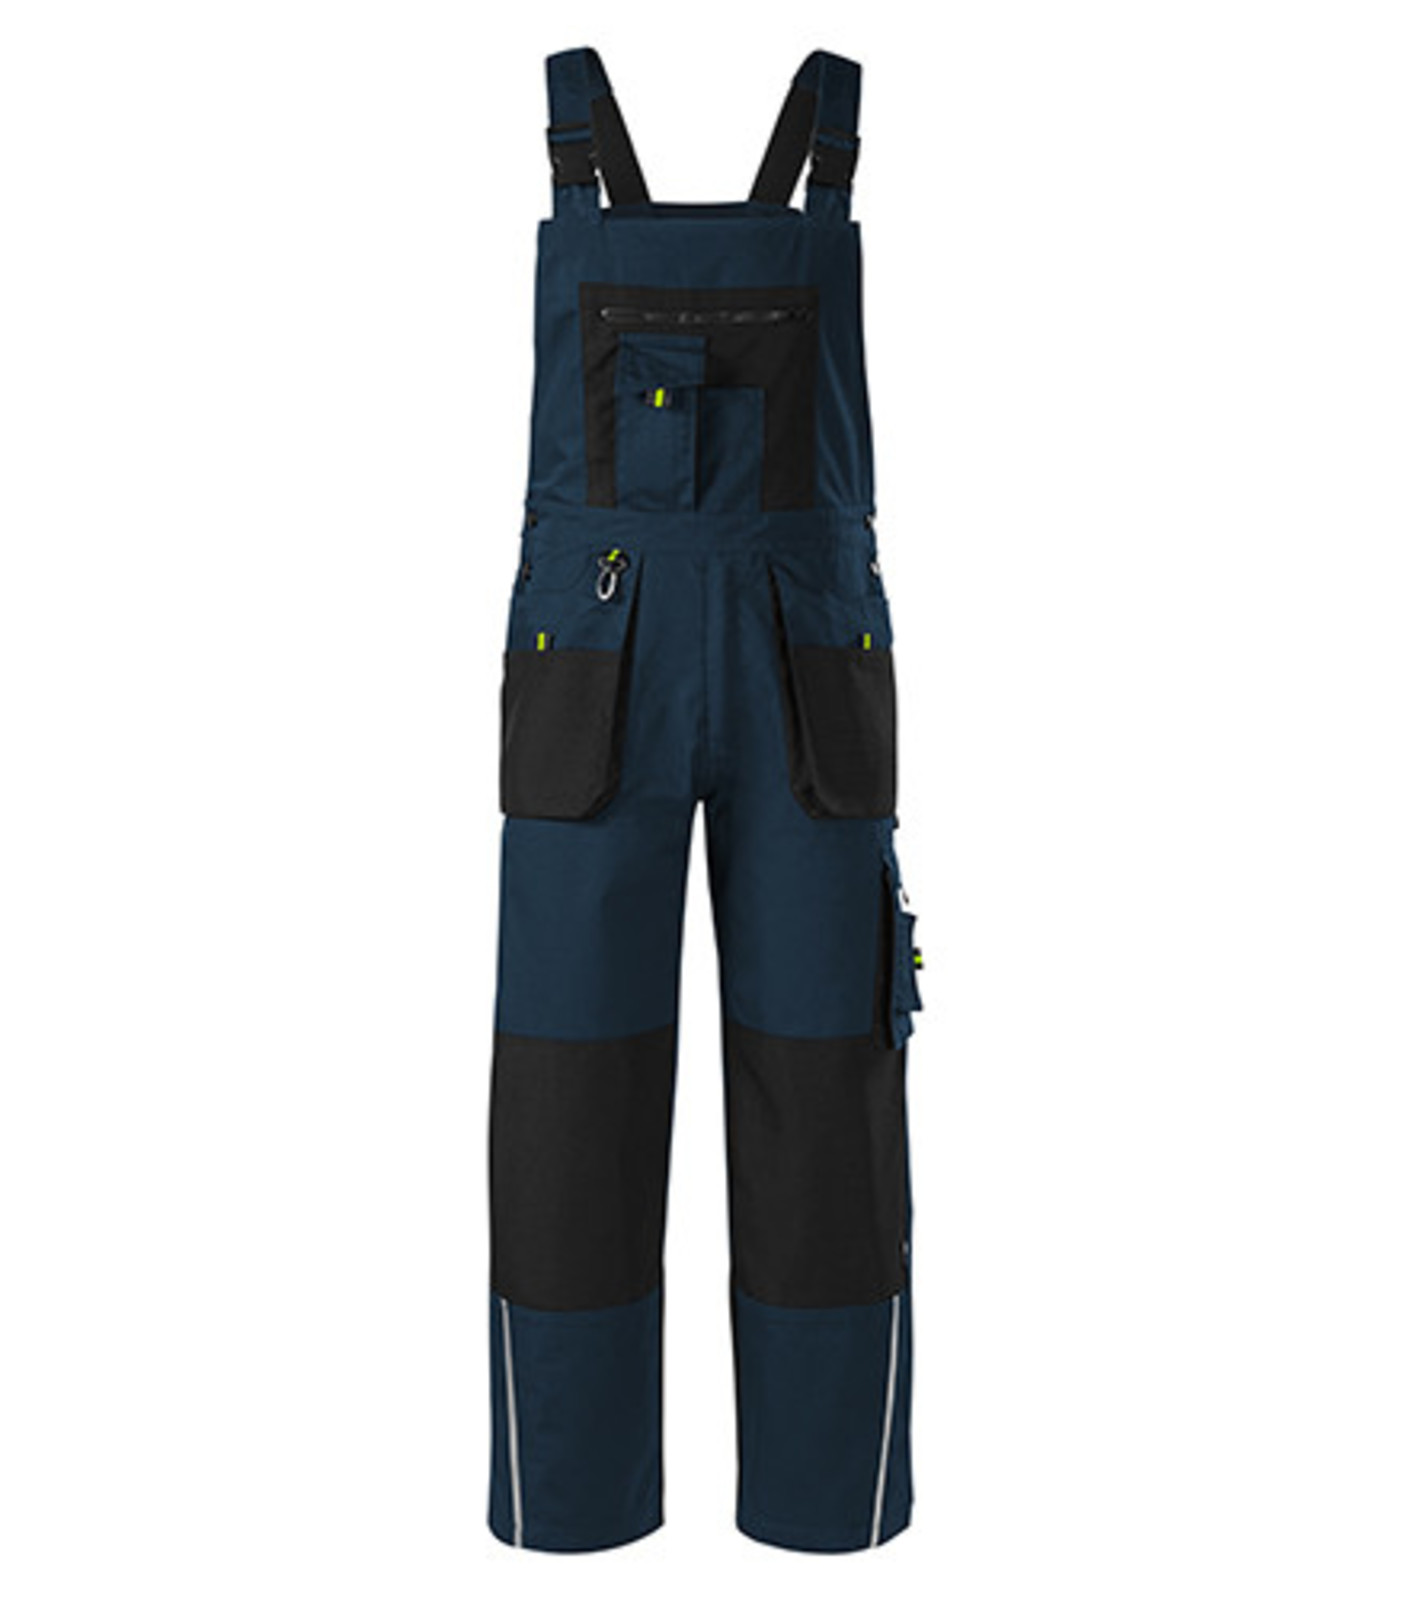 Montérkové nohavice s náprsenkou Adler Ranger W04 - veľkosť: 52-54, farba: tmavo modrá